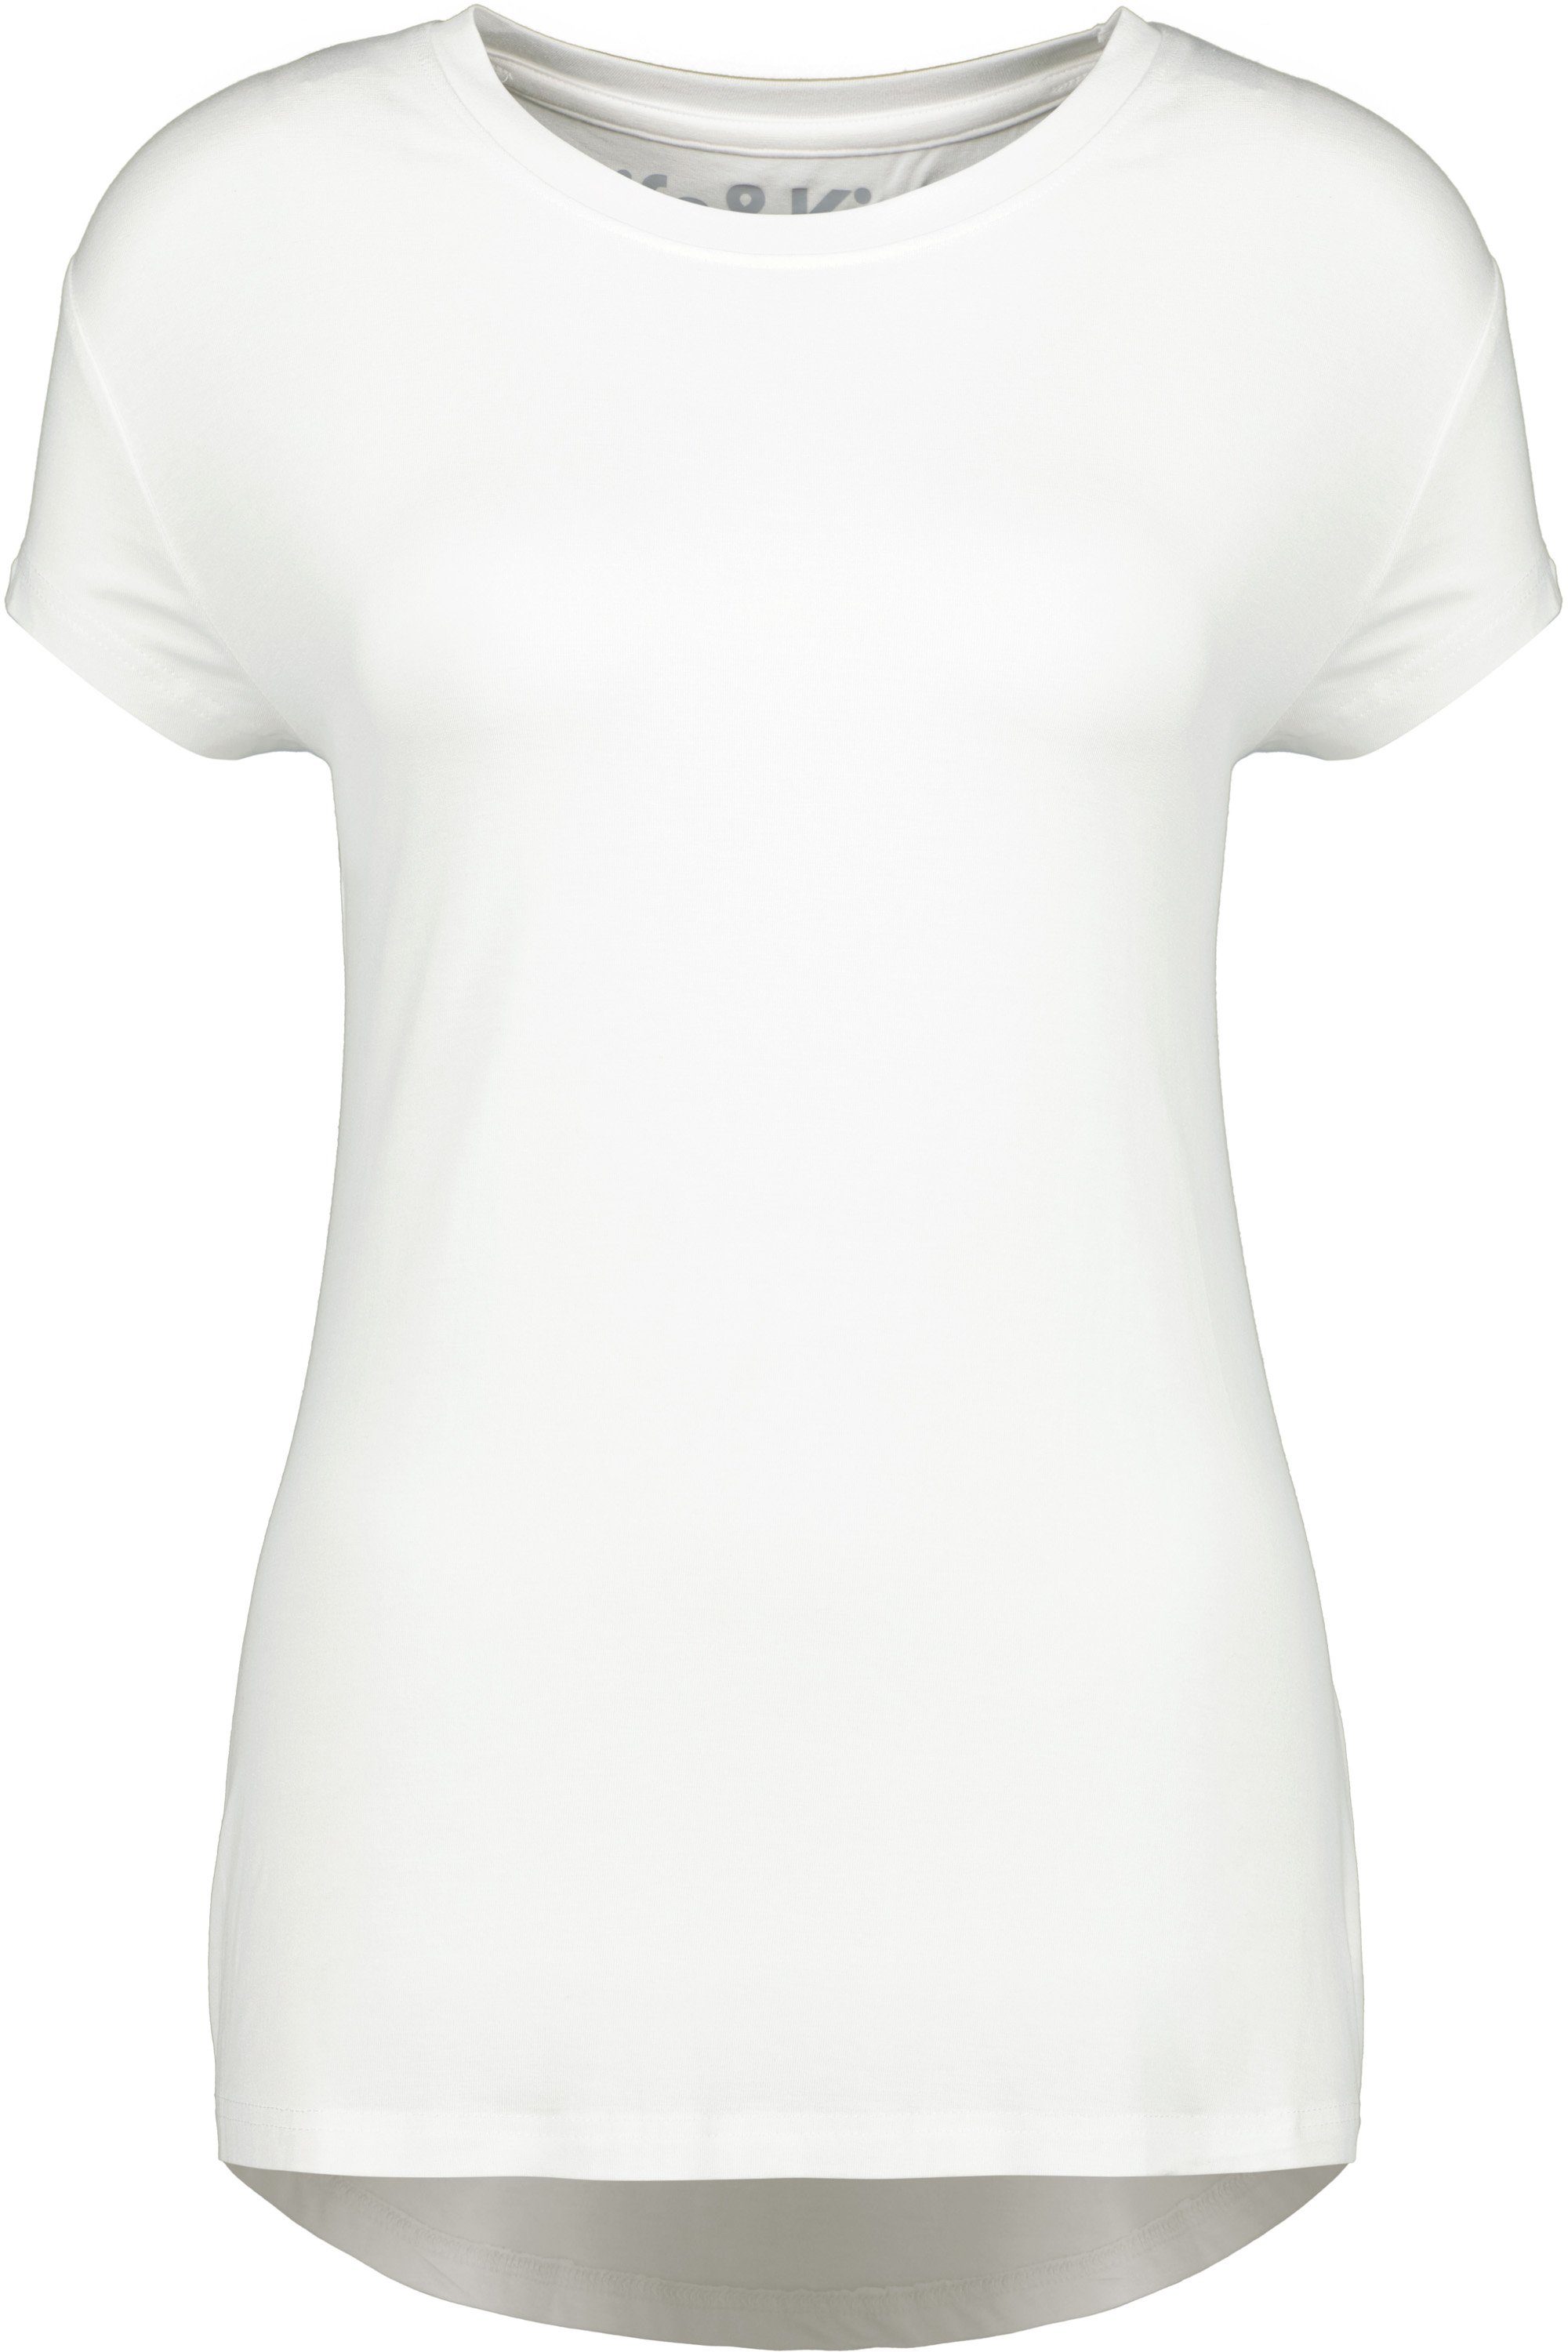 Kurzarmshirt, A Kickin white Shirt Alife Damen & Shirt MimmyAK Rundhalsshirt